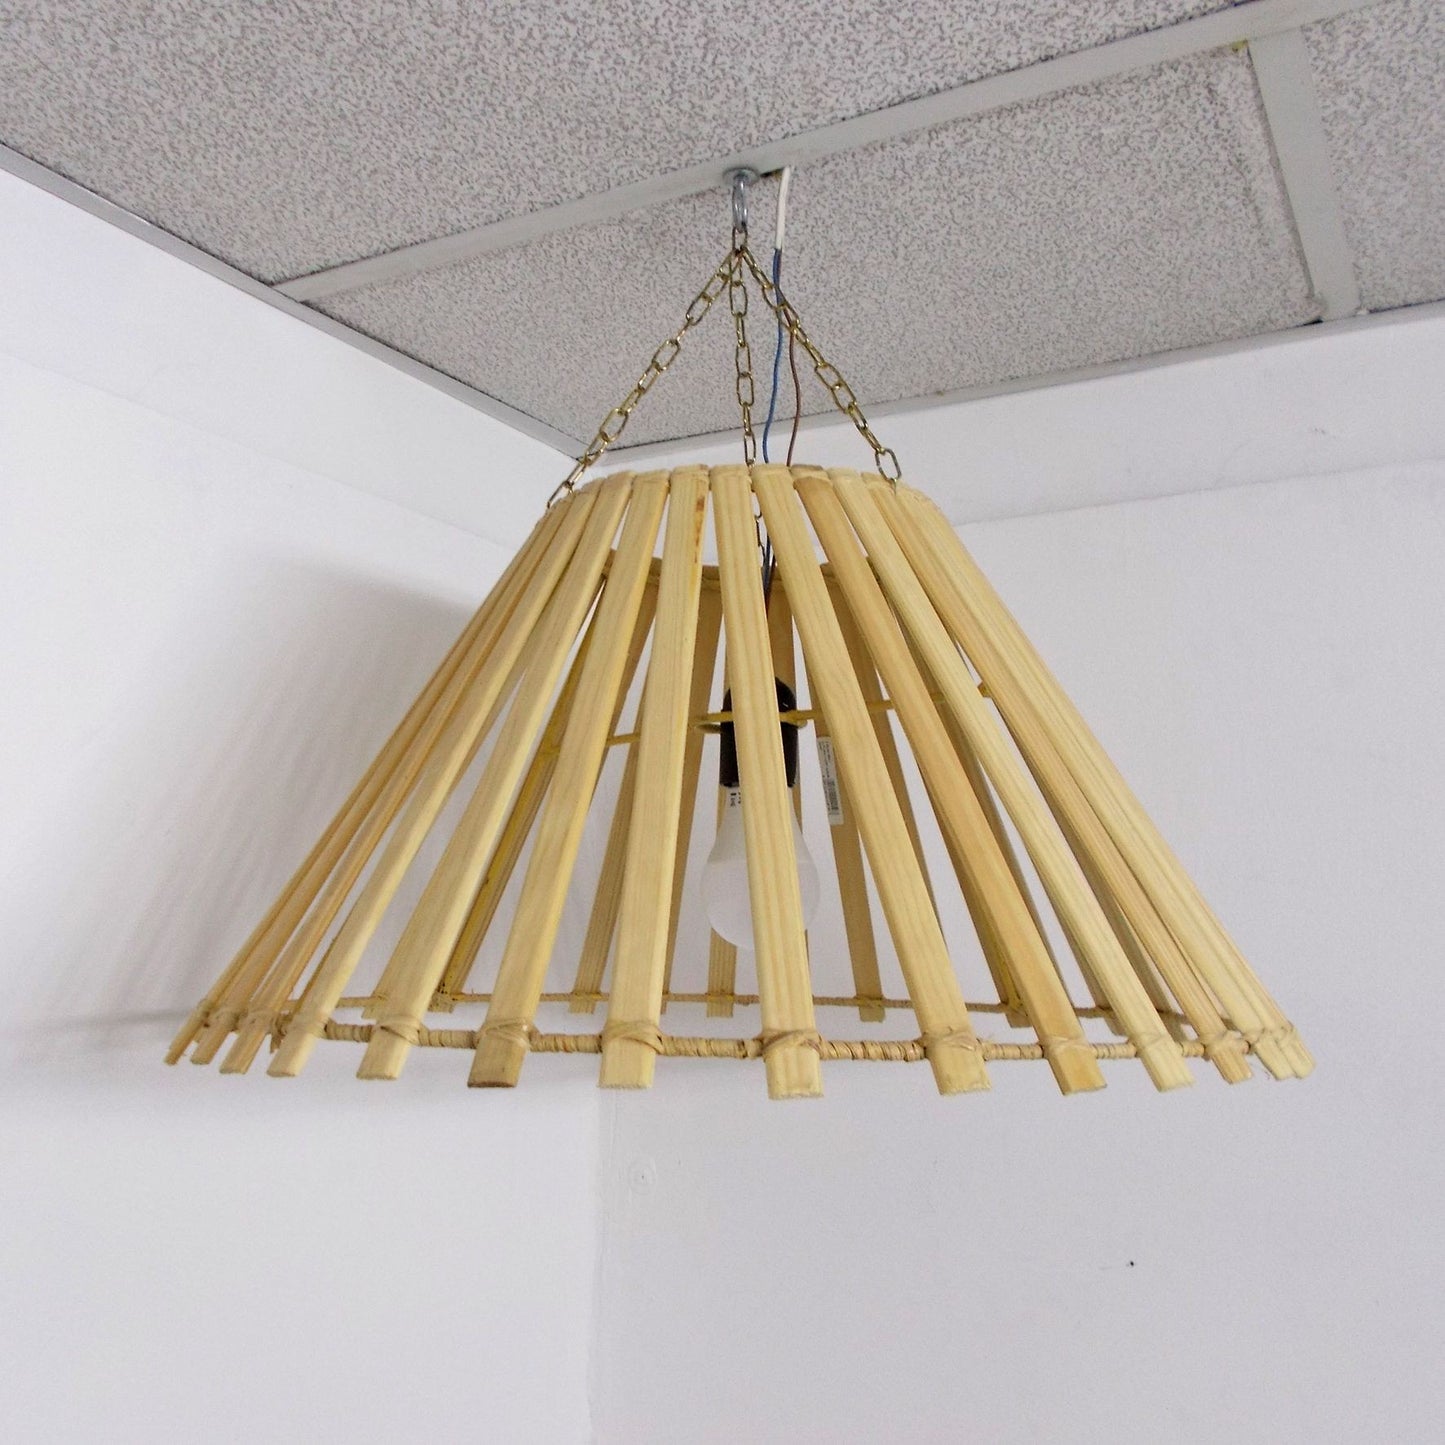 Etnisch meubilair Marokkaanse Kroonluchter Lamp bamboe Ophanging 0503191154